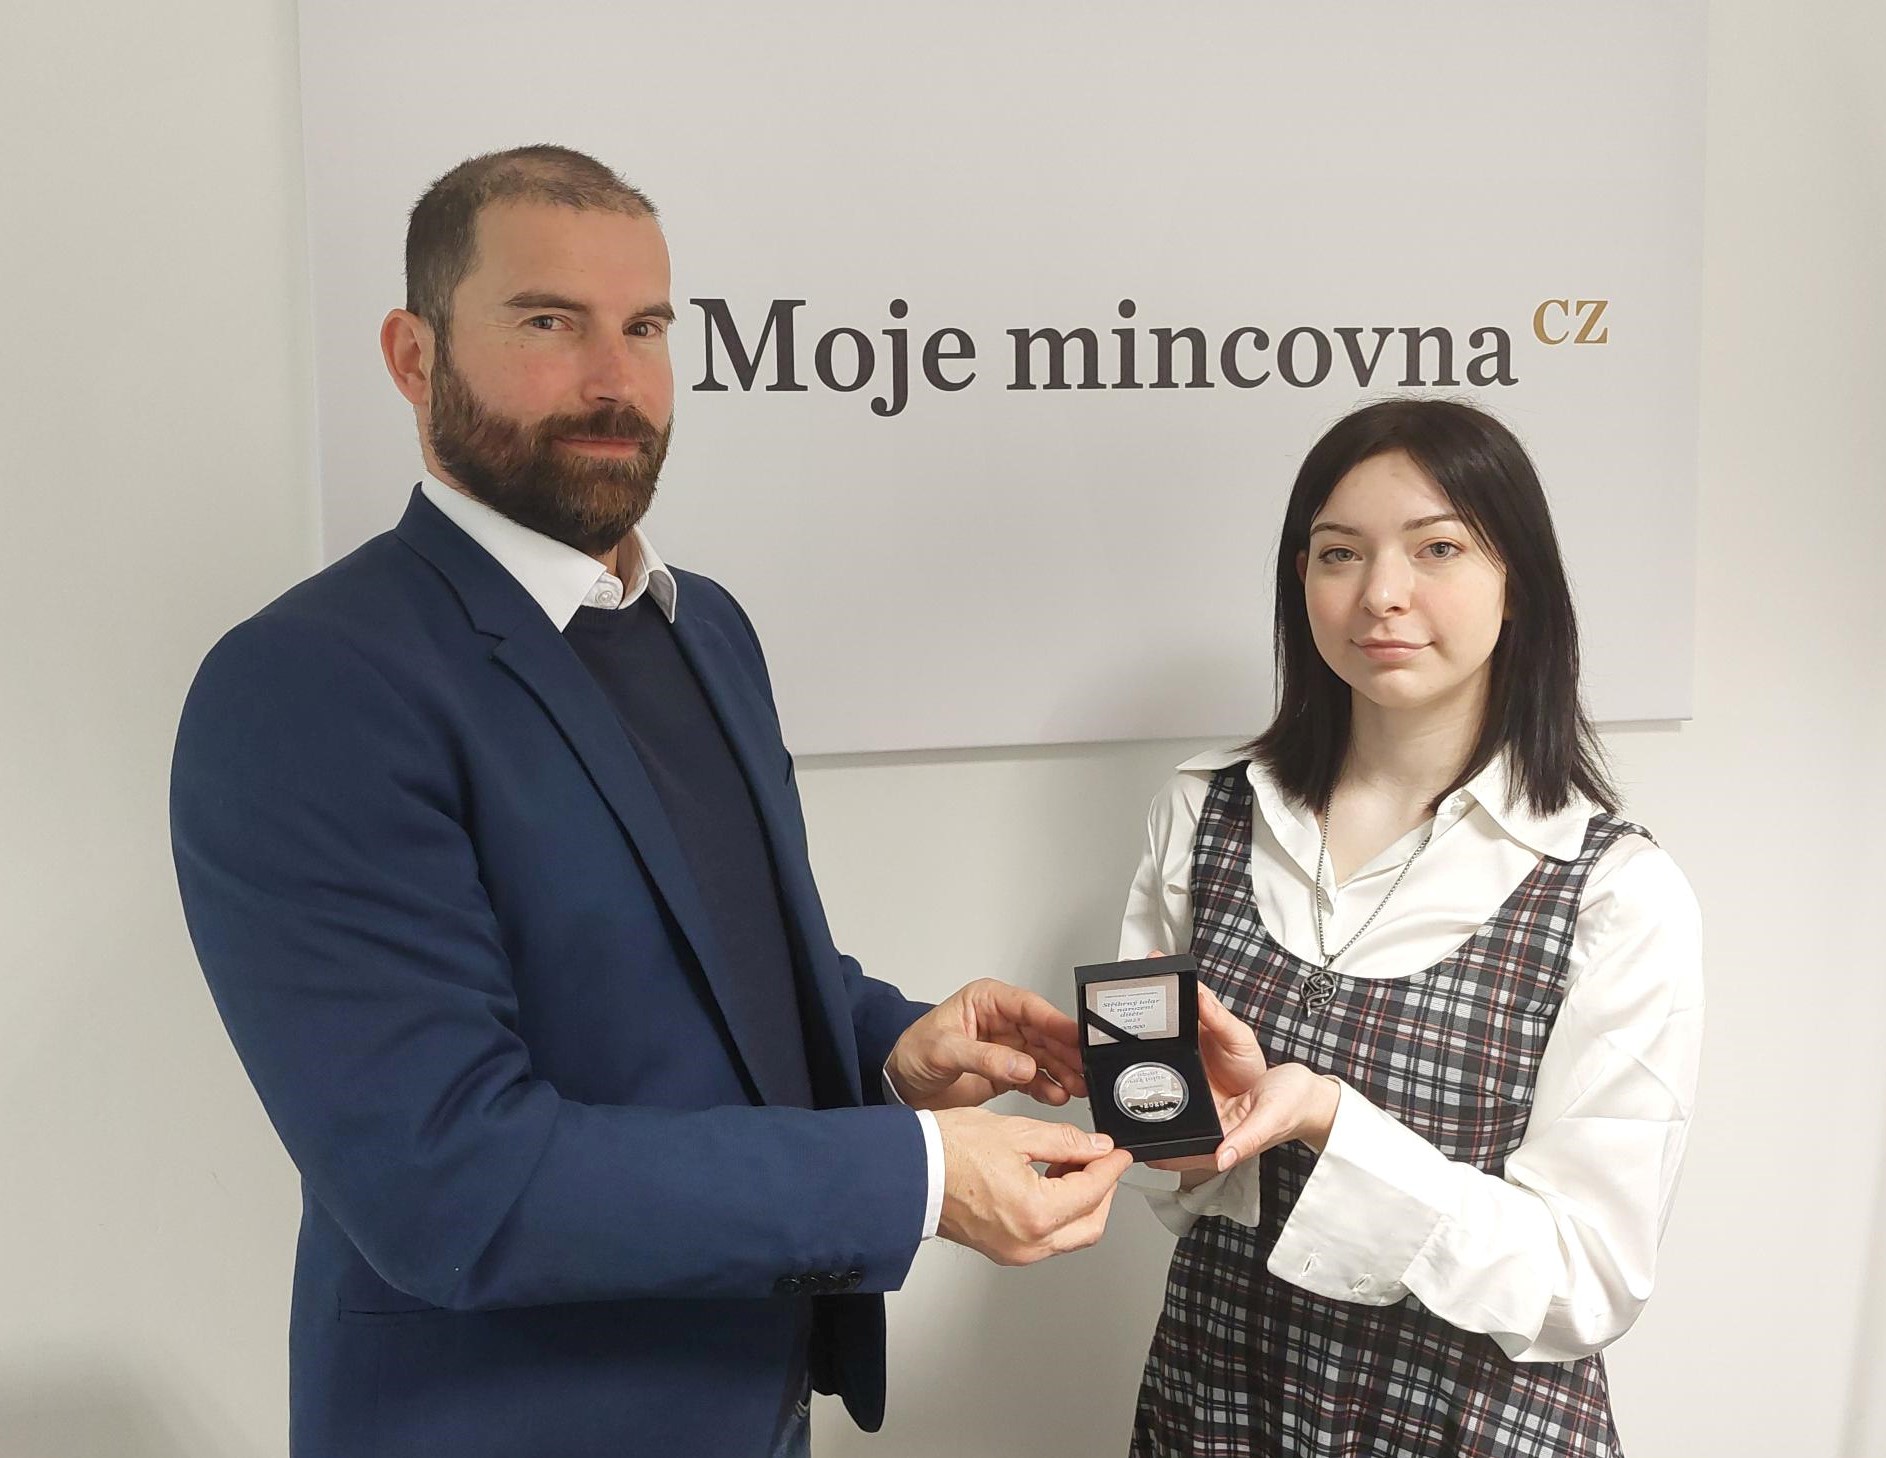 Ředitel Moje mincovna CZ, Libor Veselý, předává první exemplář pamětní ražby autorce vítězného návrhu Michaele Gadziňské.